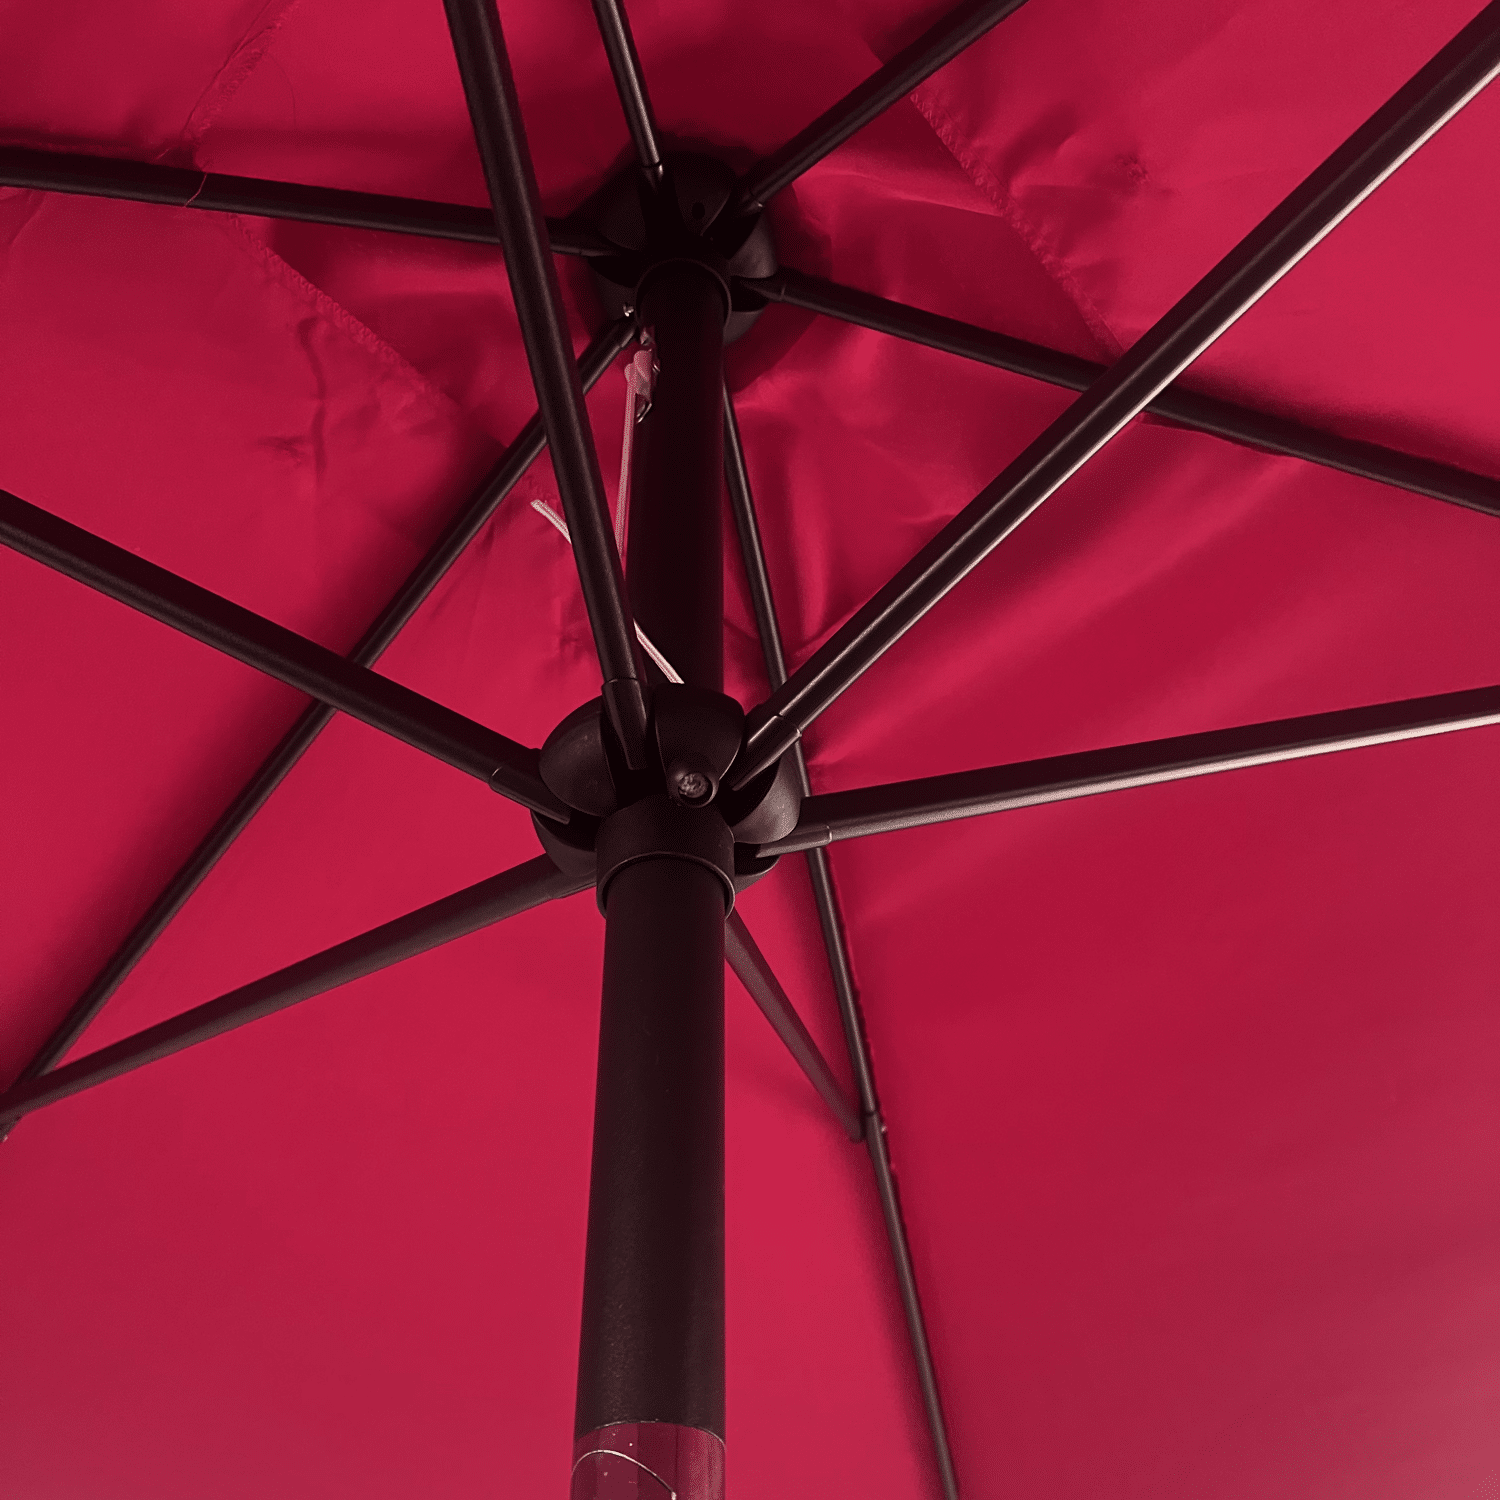 HAPUNA ombrello diritto rettangolare 2x3m fucsia